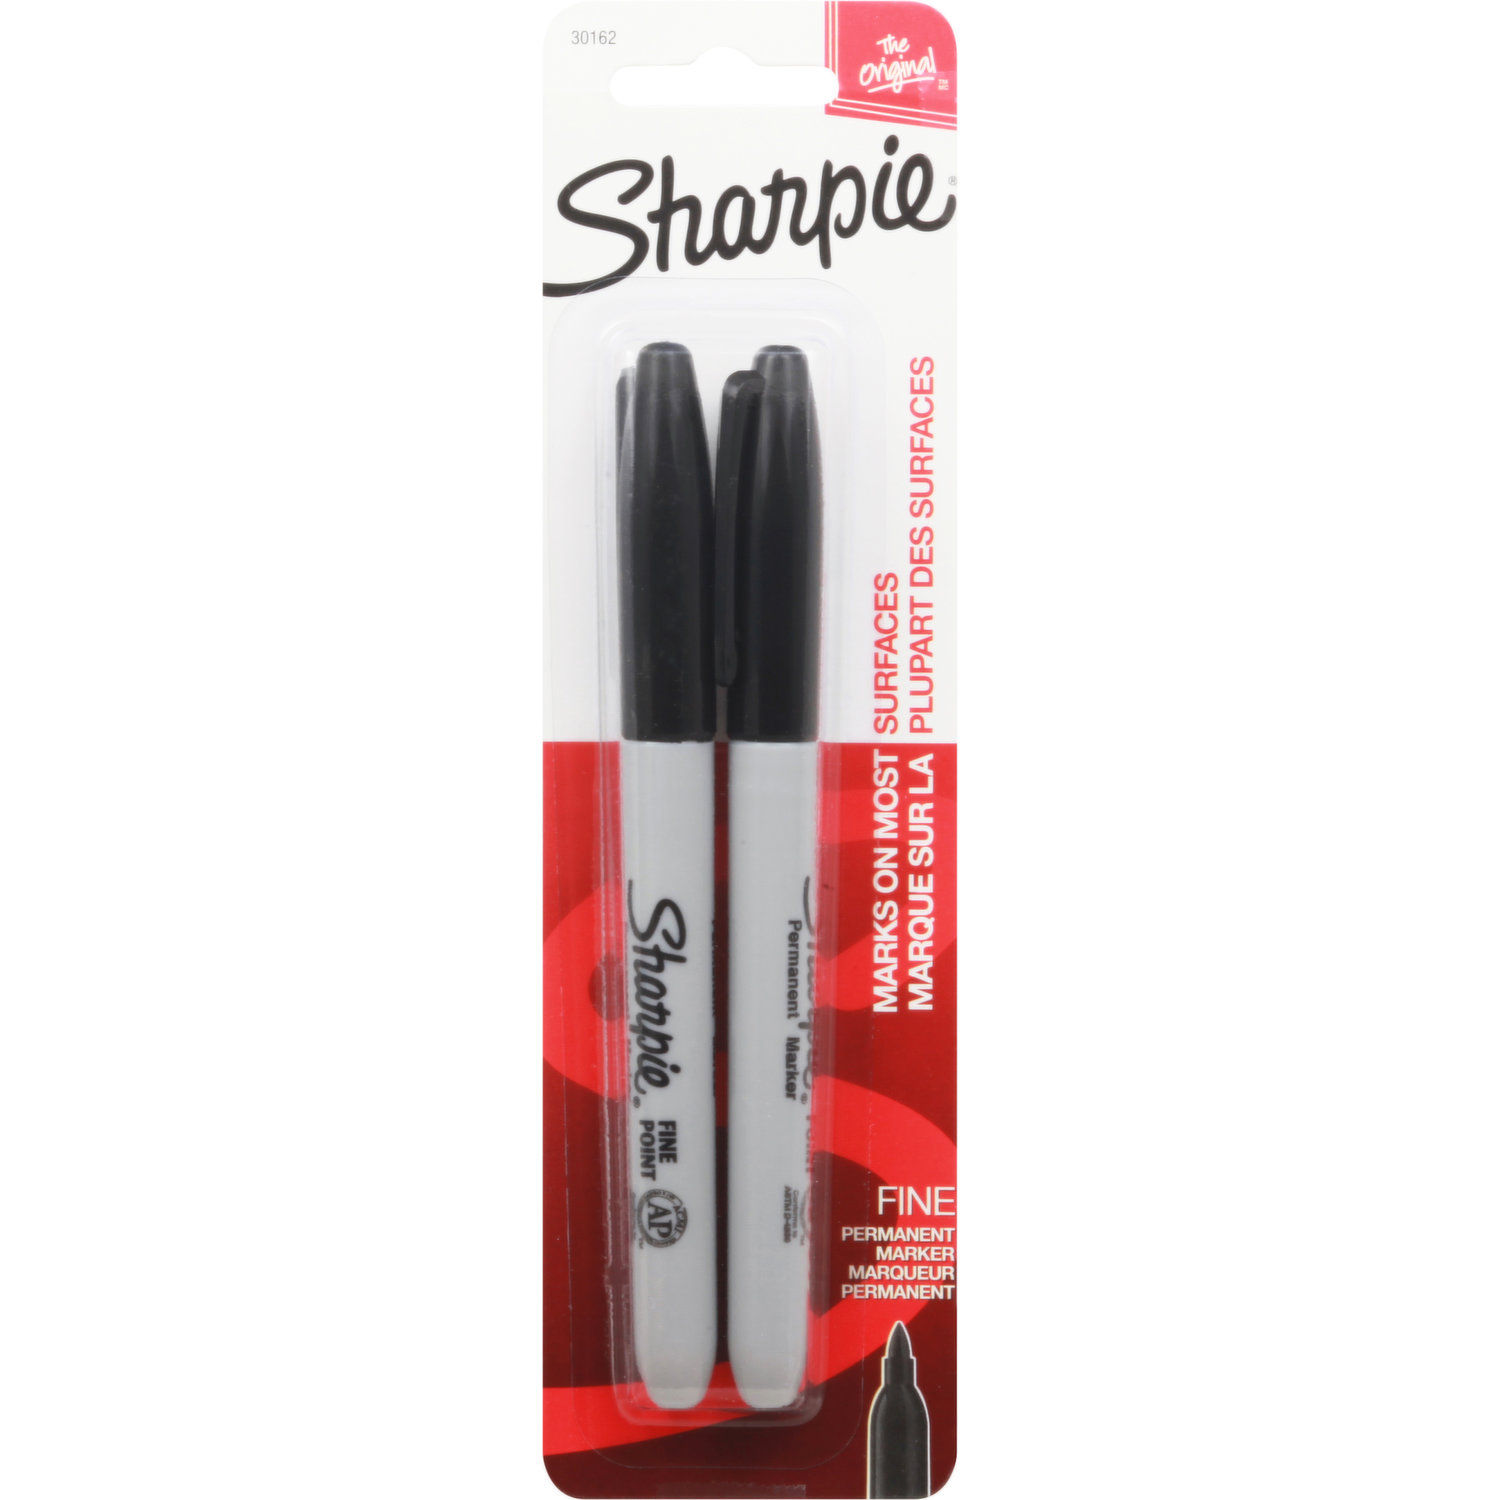 Sharpie - Marqueur permanent - pointe fine - noir